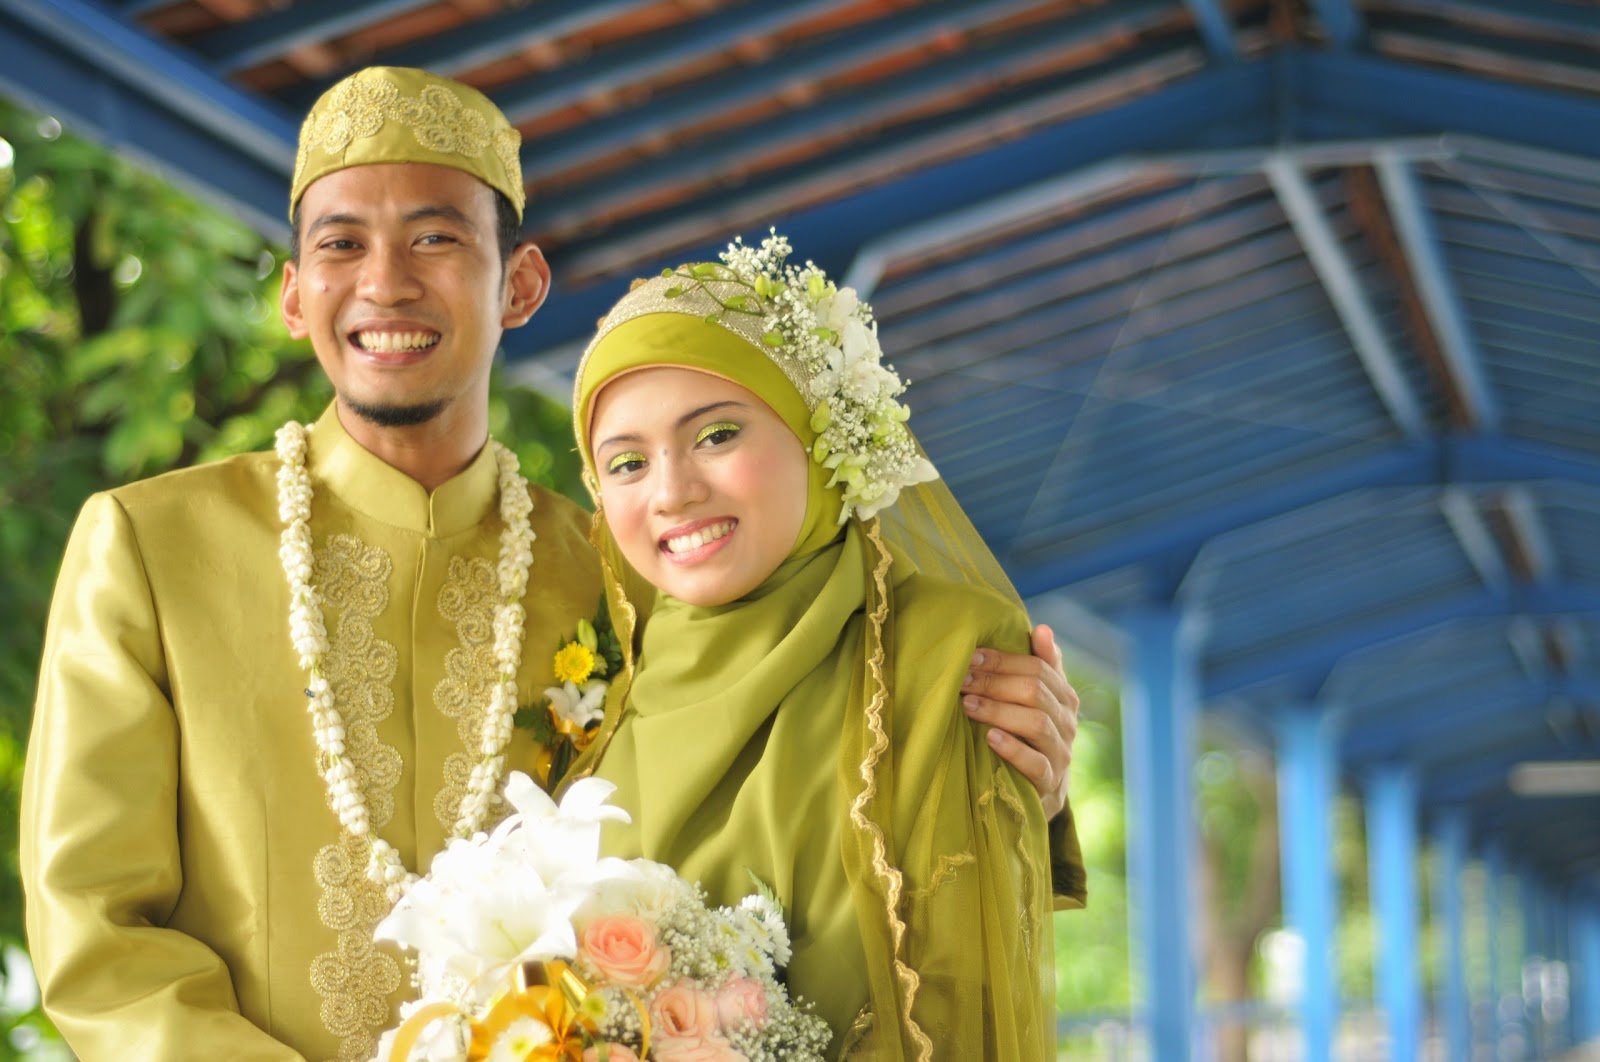 Узбекские мусульманские. Свадьба мусульман. Современная мусульманская свадьба. Узбекская мусульманская свадьба. Мусульманский брак.